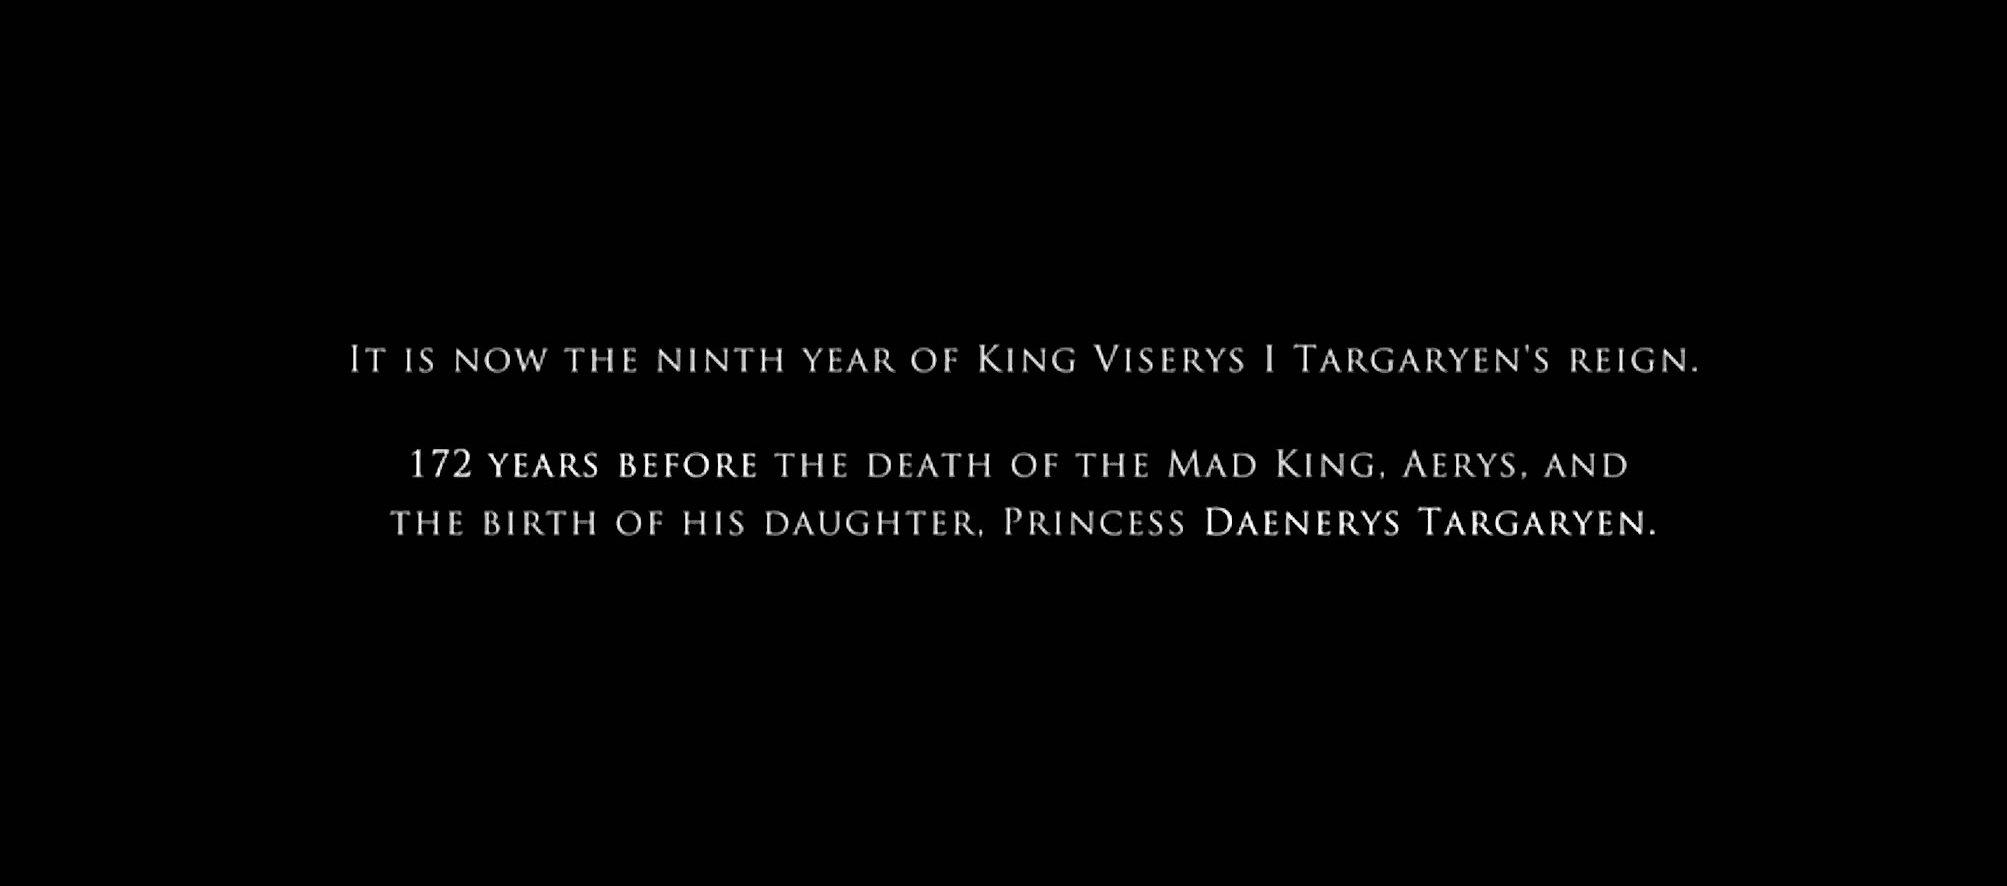 „House of the Dragon“ spielt 172 Jahre vor dem Tod des verrückten Königs und der Geburt seiner Tochter Daenerys Targaryen.